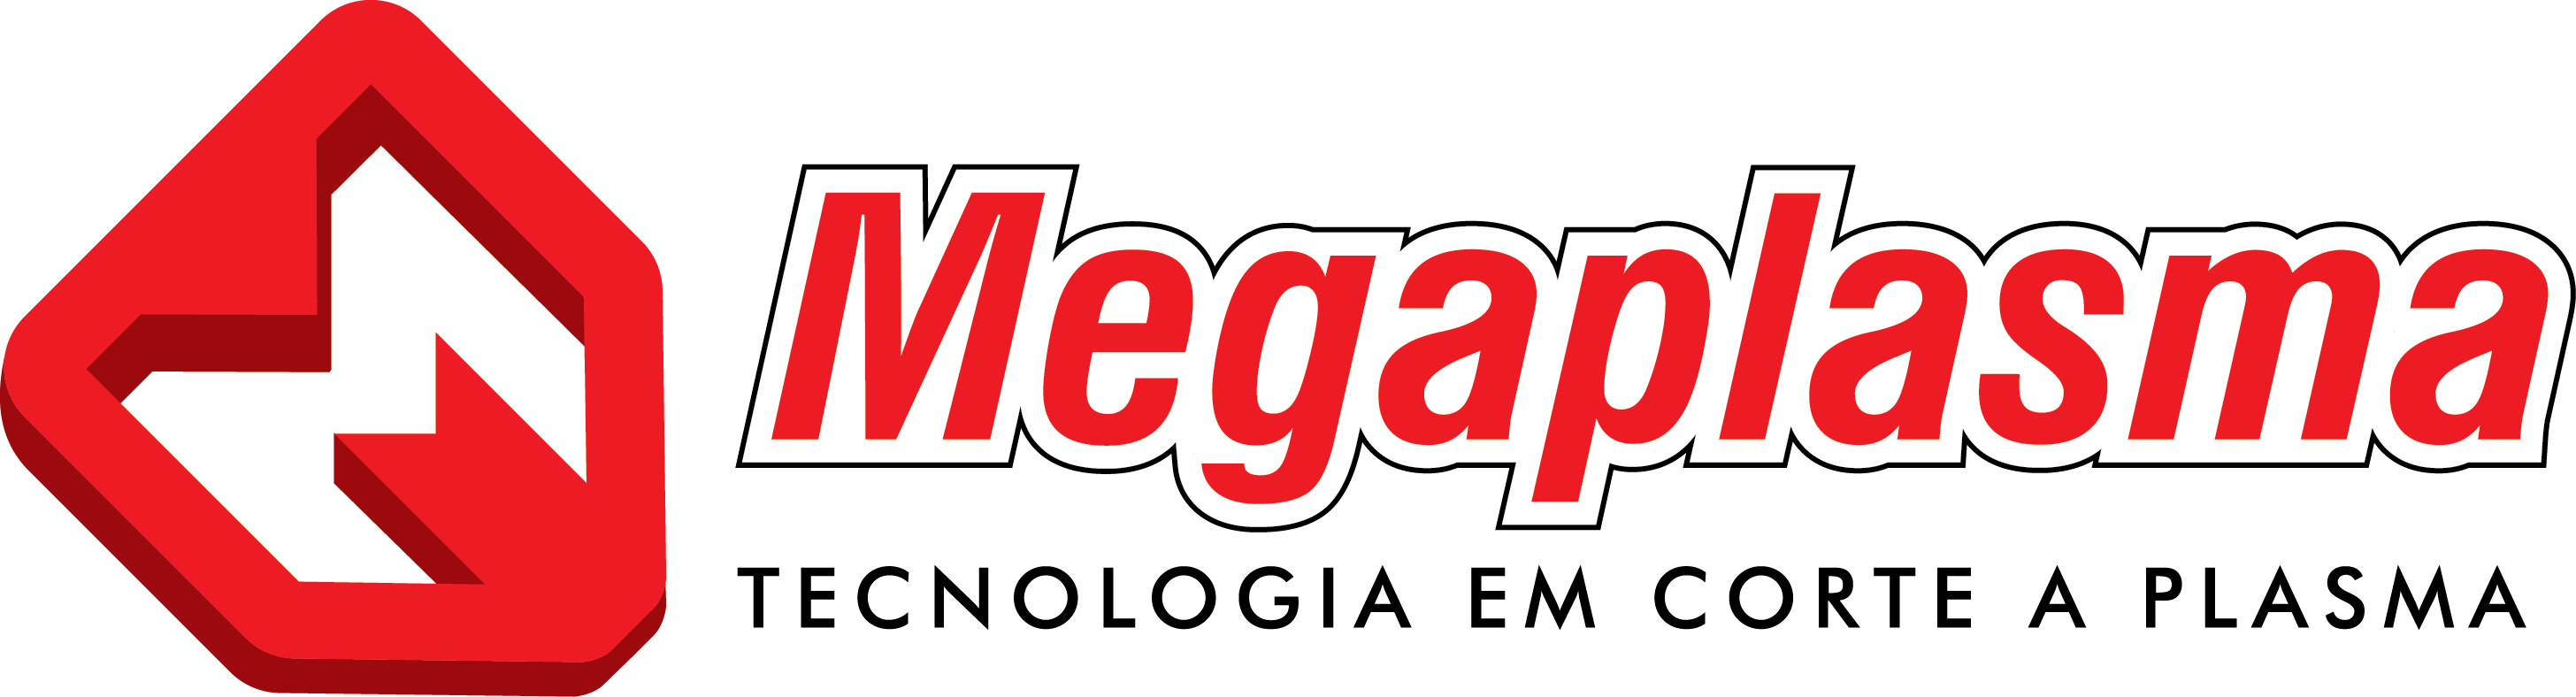 Tecnologia em corte a plasma | Megaplasma – Corte a Plasma